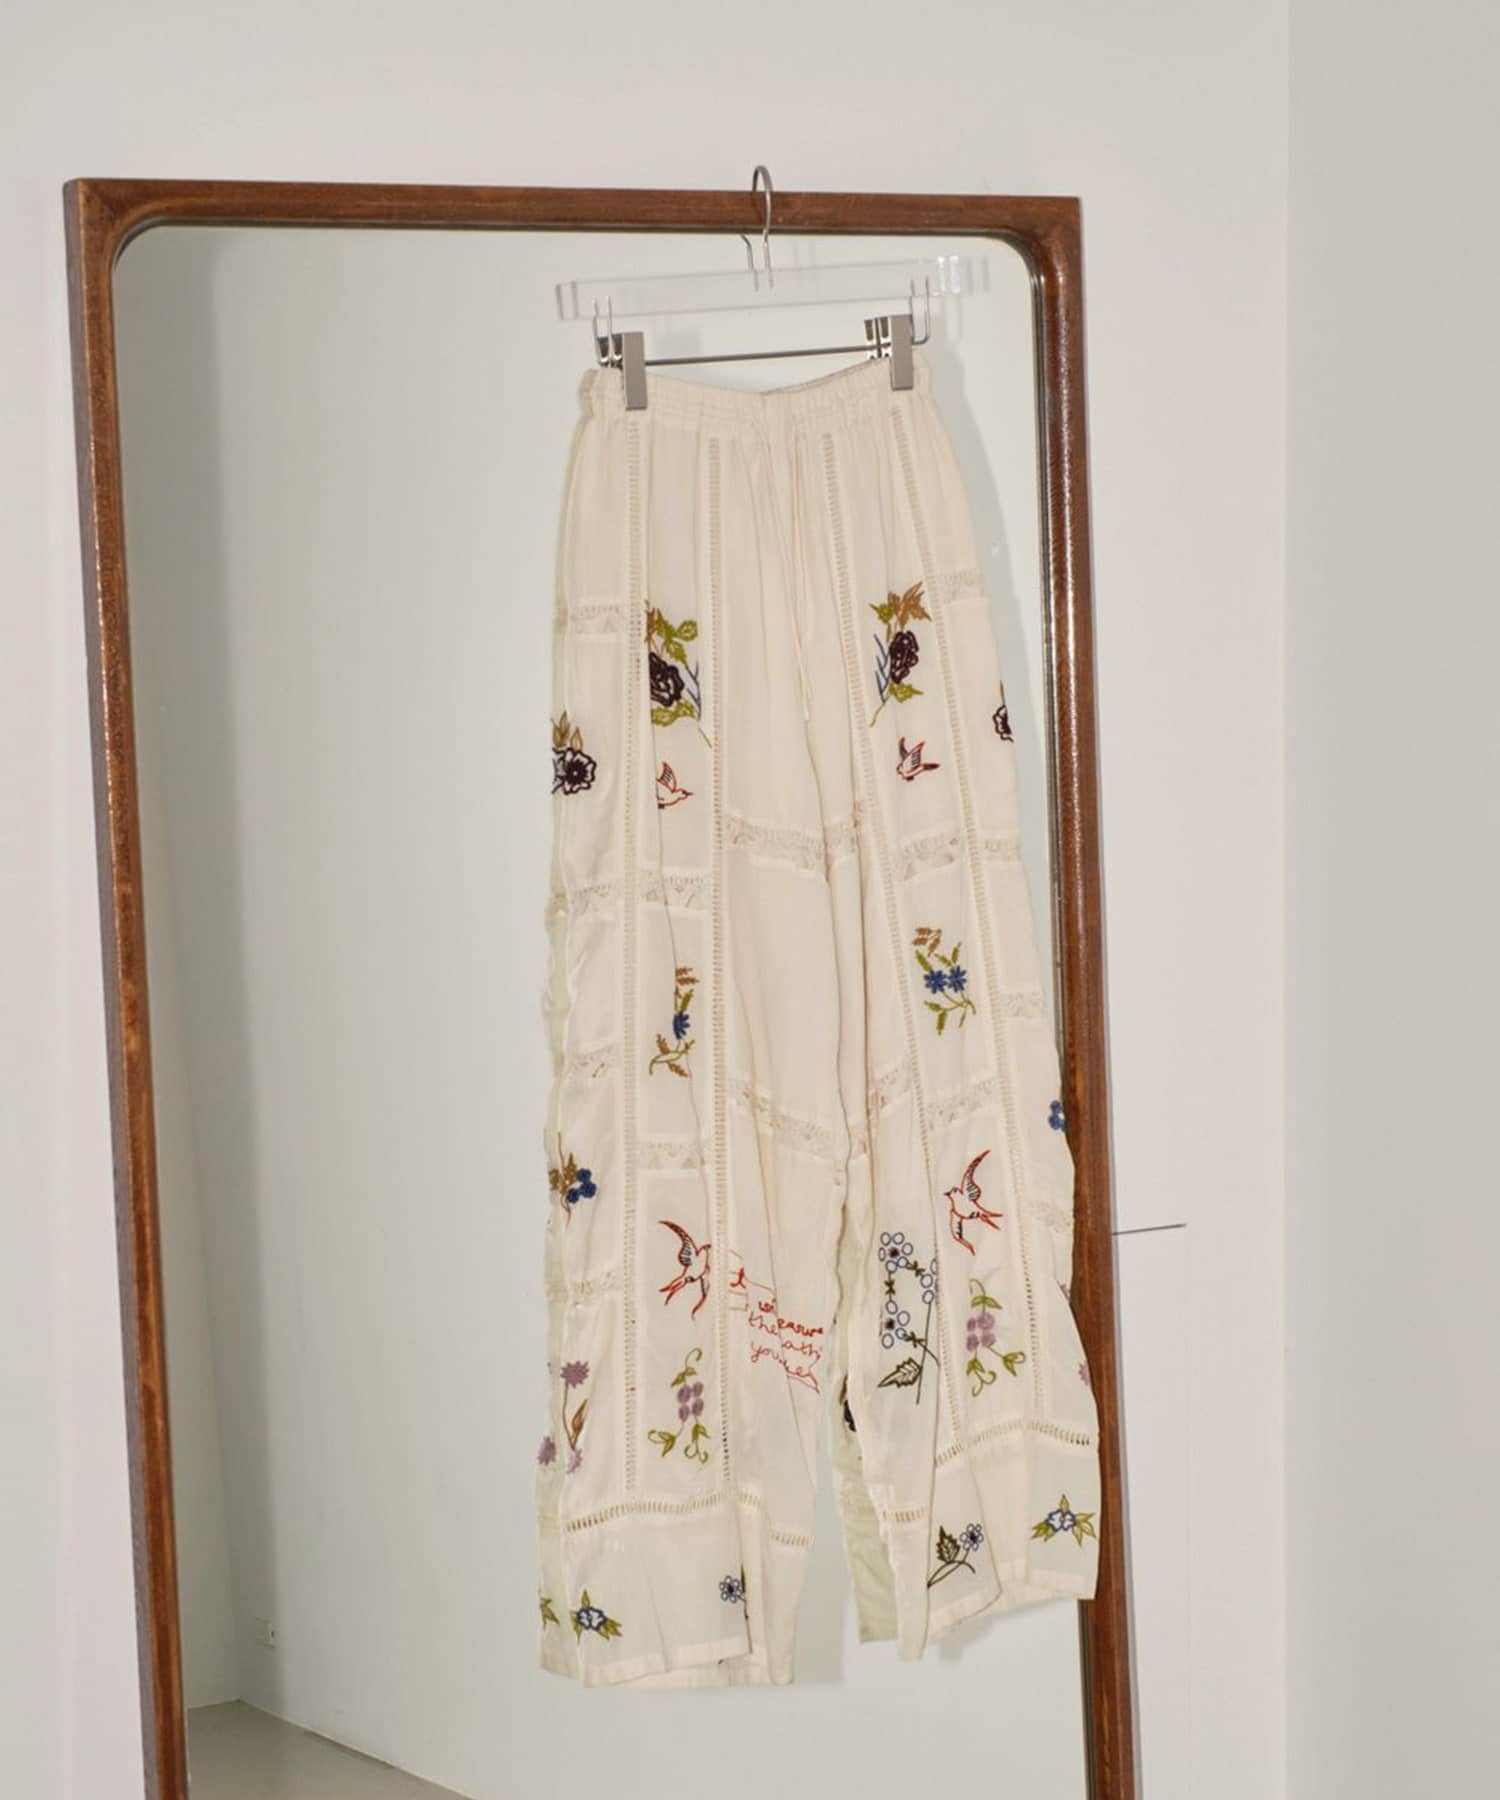 公式サイト購入した正規品ですTODAYFUL Embroidery Patchwork Trousers36